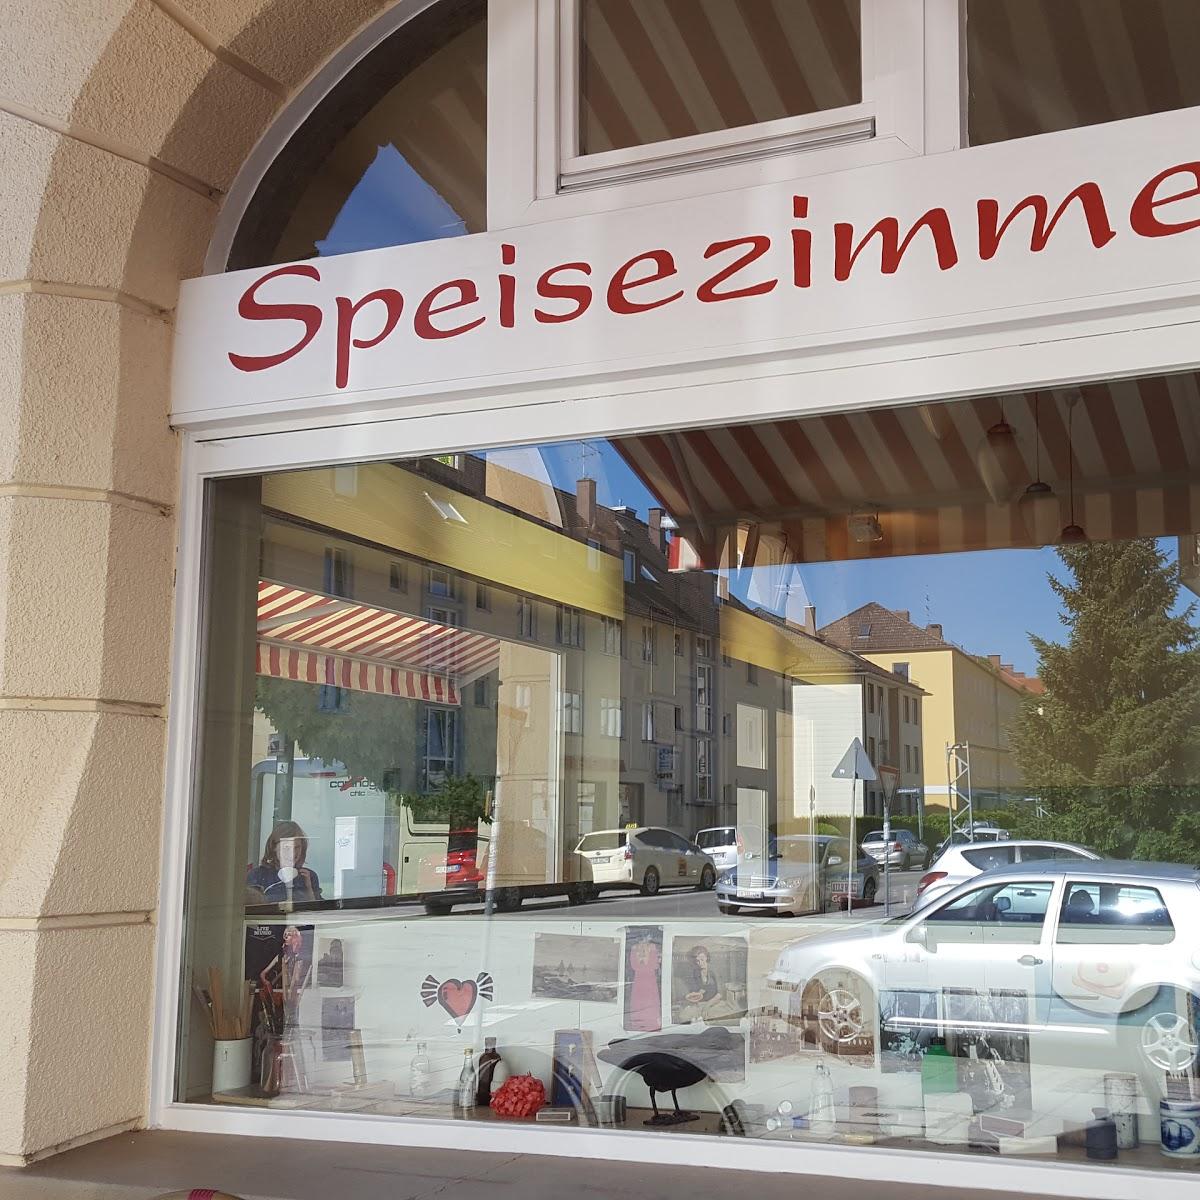 Restaurant "Speisezimmer" in München